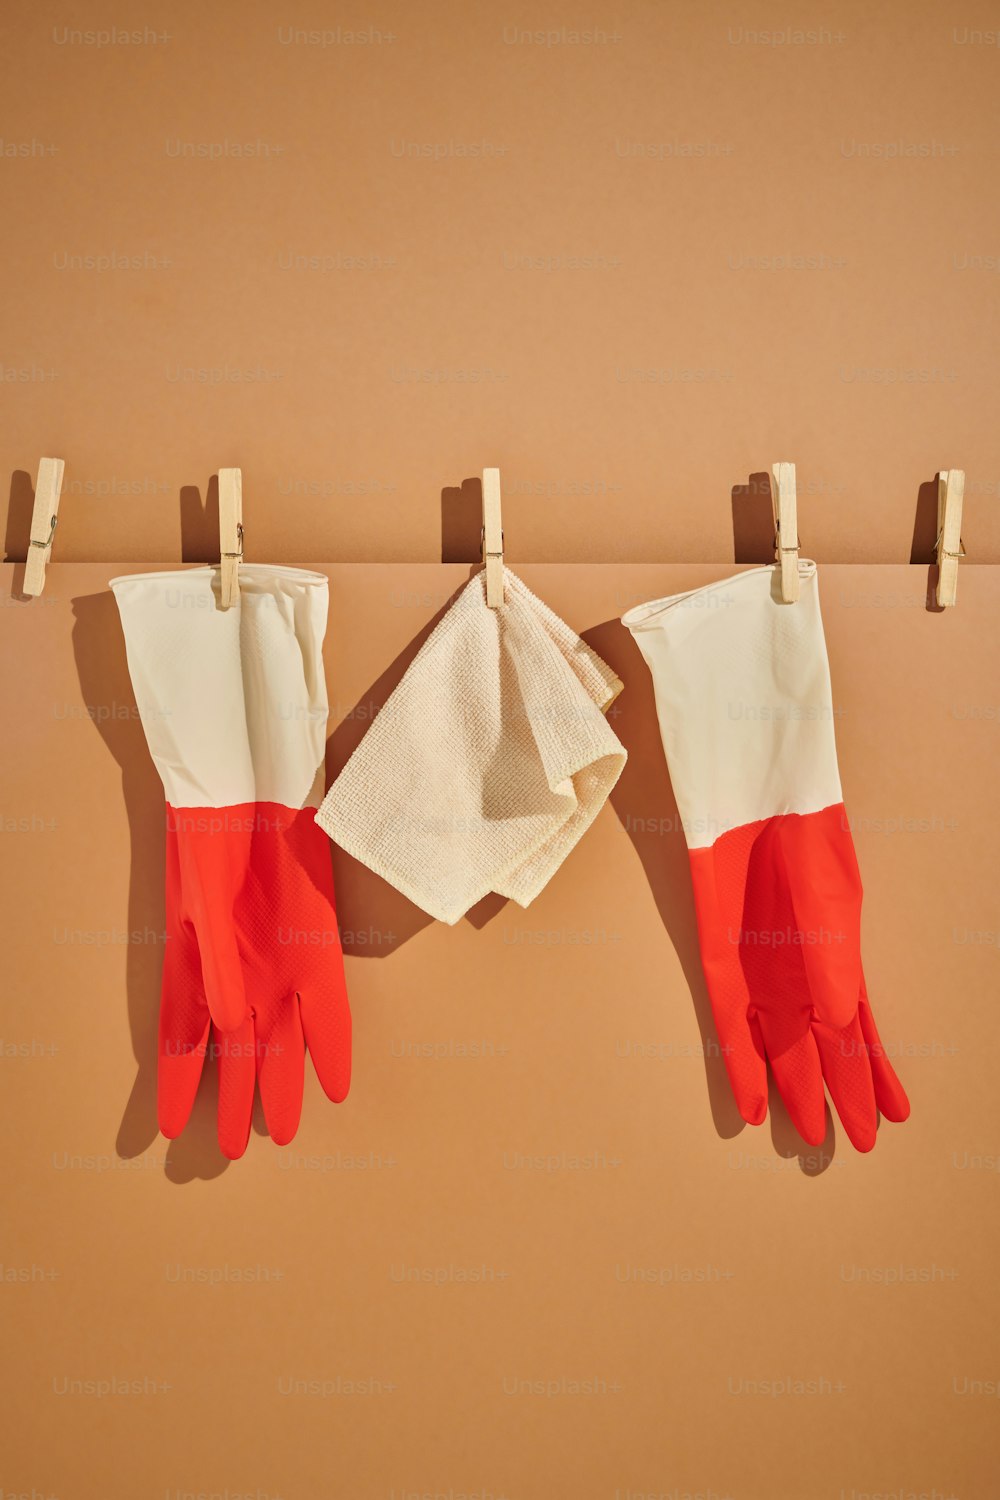 un paio di guanti rossi e bianchi appesi a una linea di vestiti